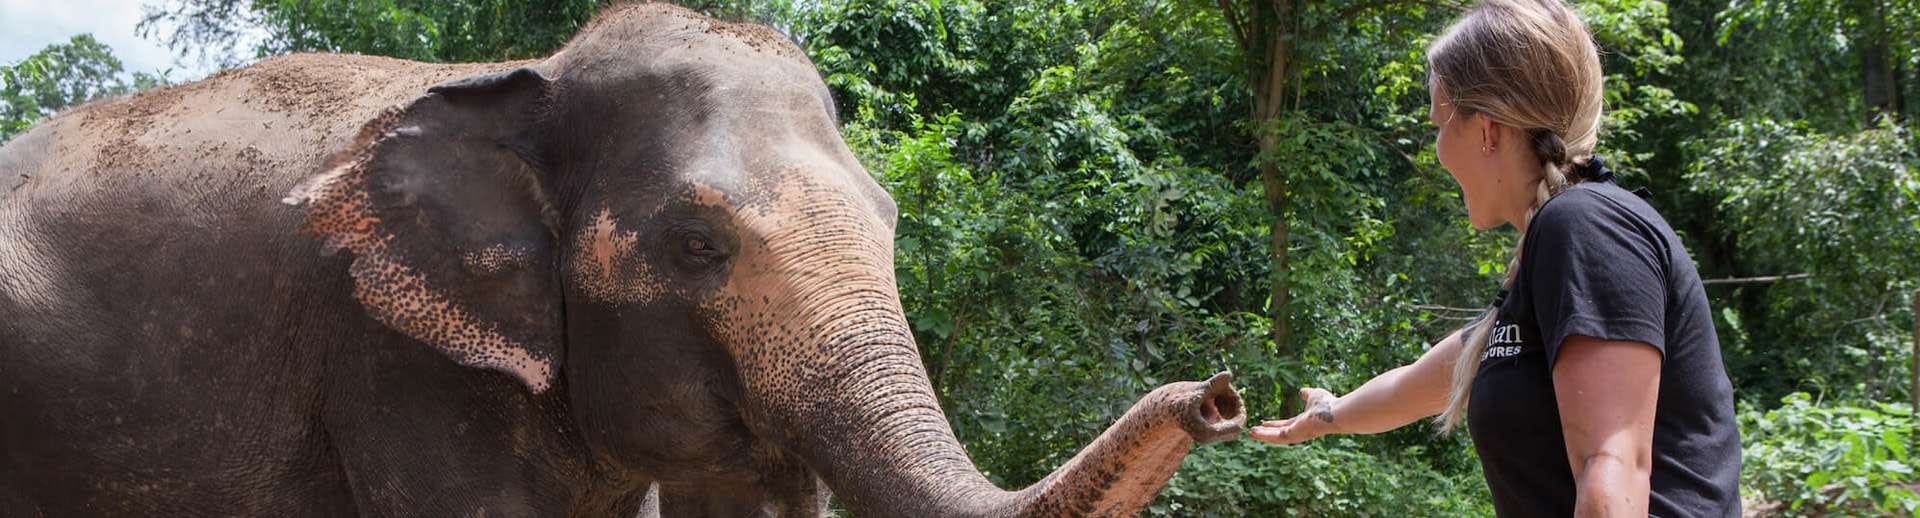 elephant retirement park tours